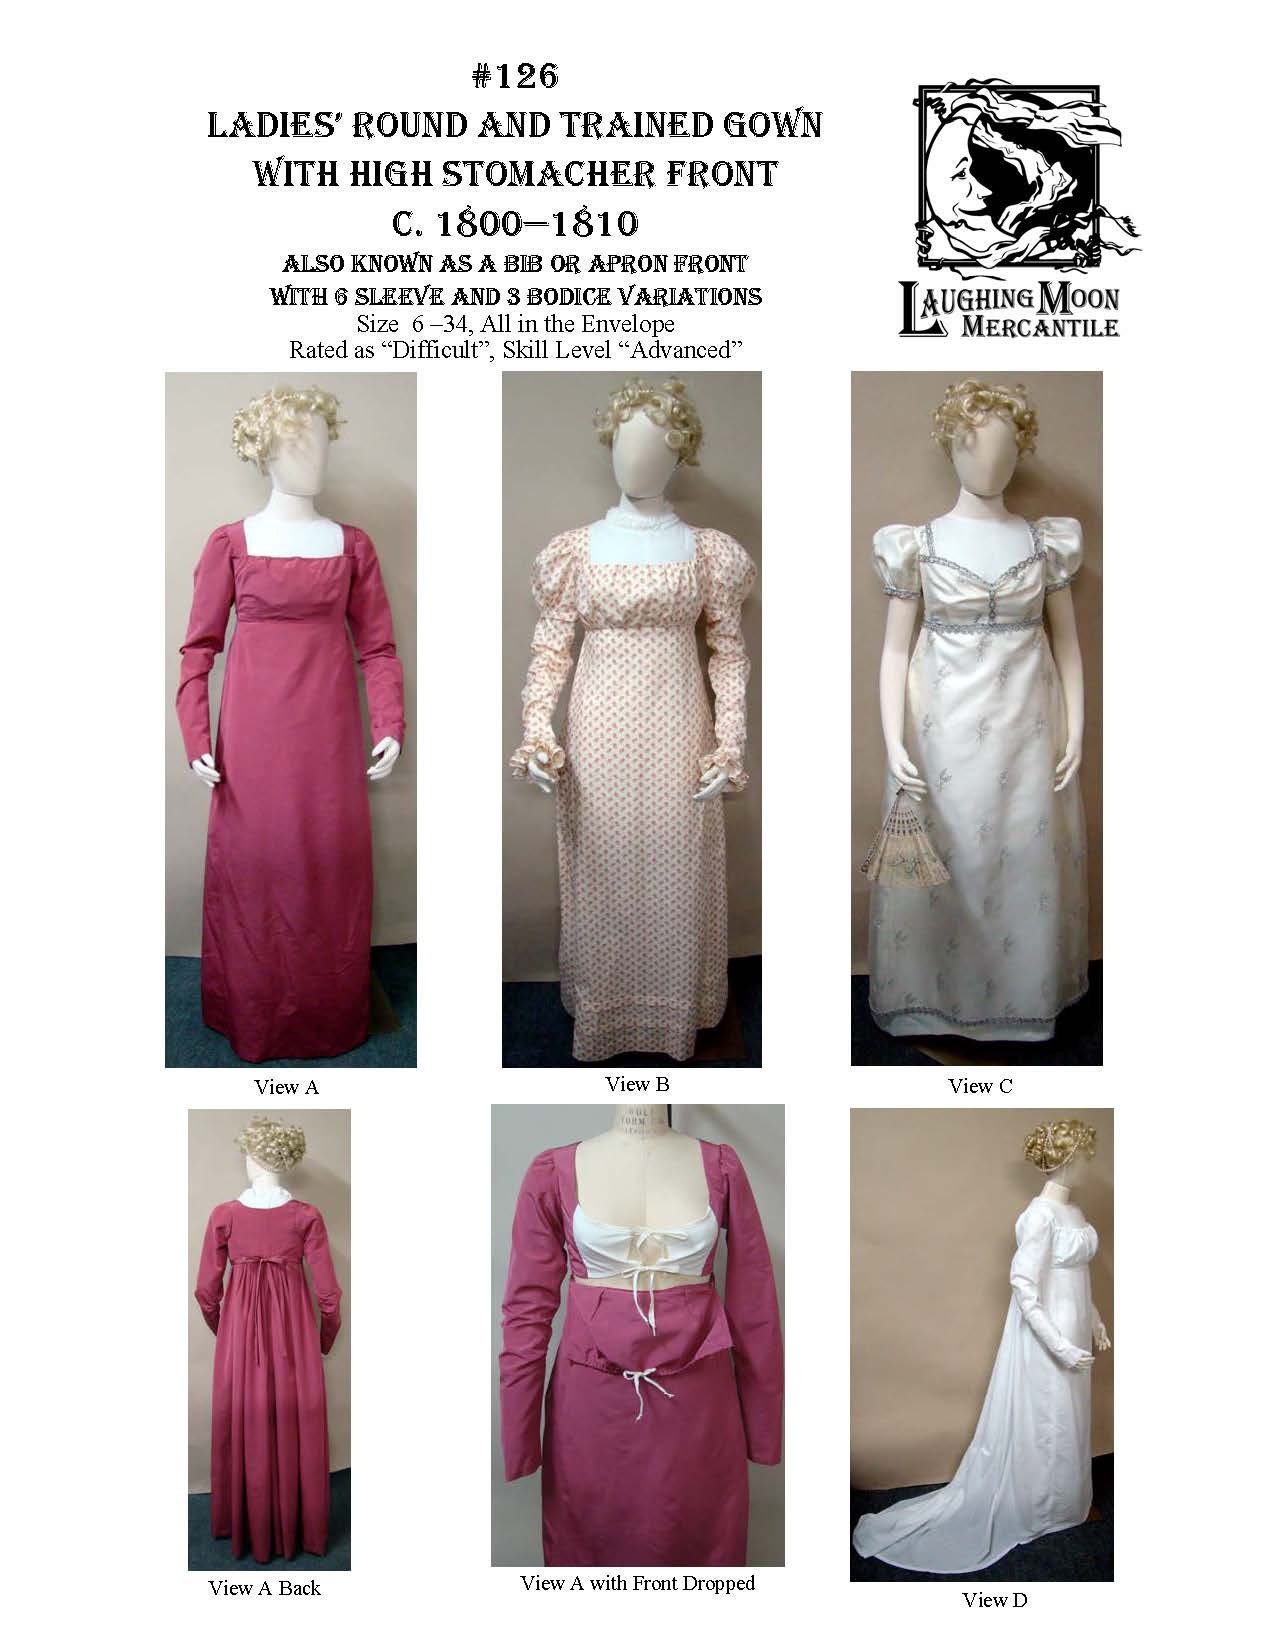 Regency Gown Pattern Queen Louise of Prussia PDF Download - Etsy | Gown  pattern, Regency gown, Gowns